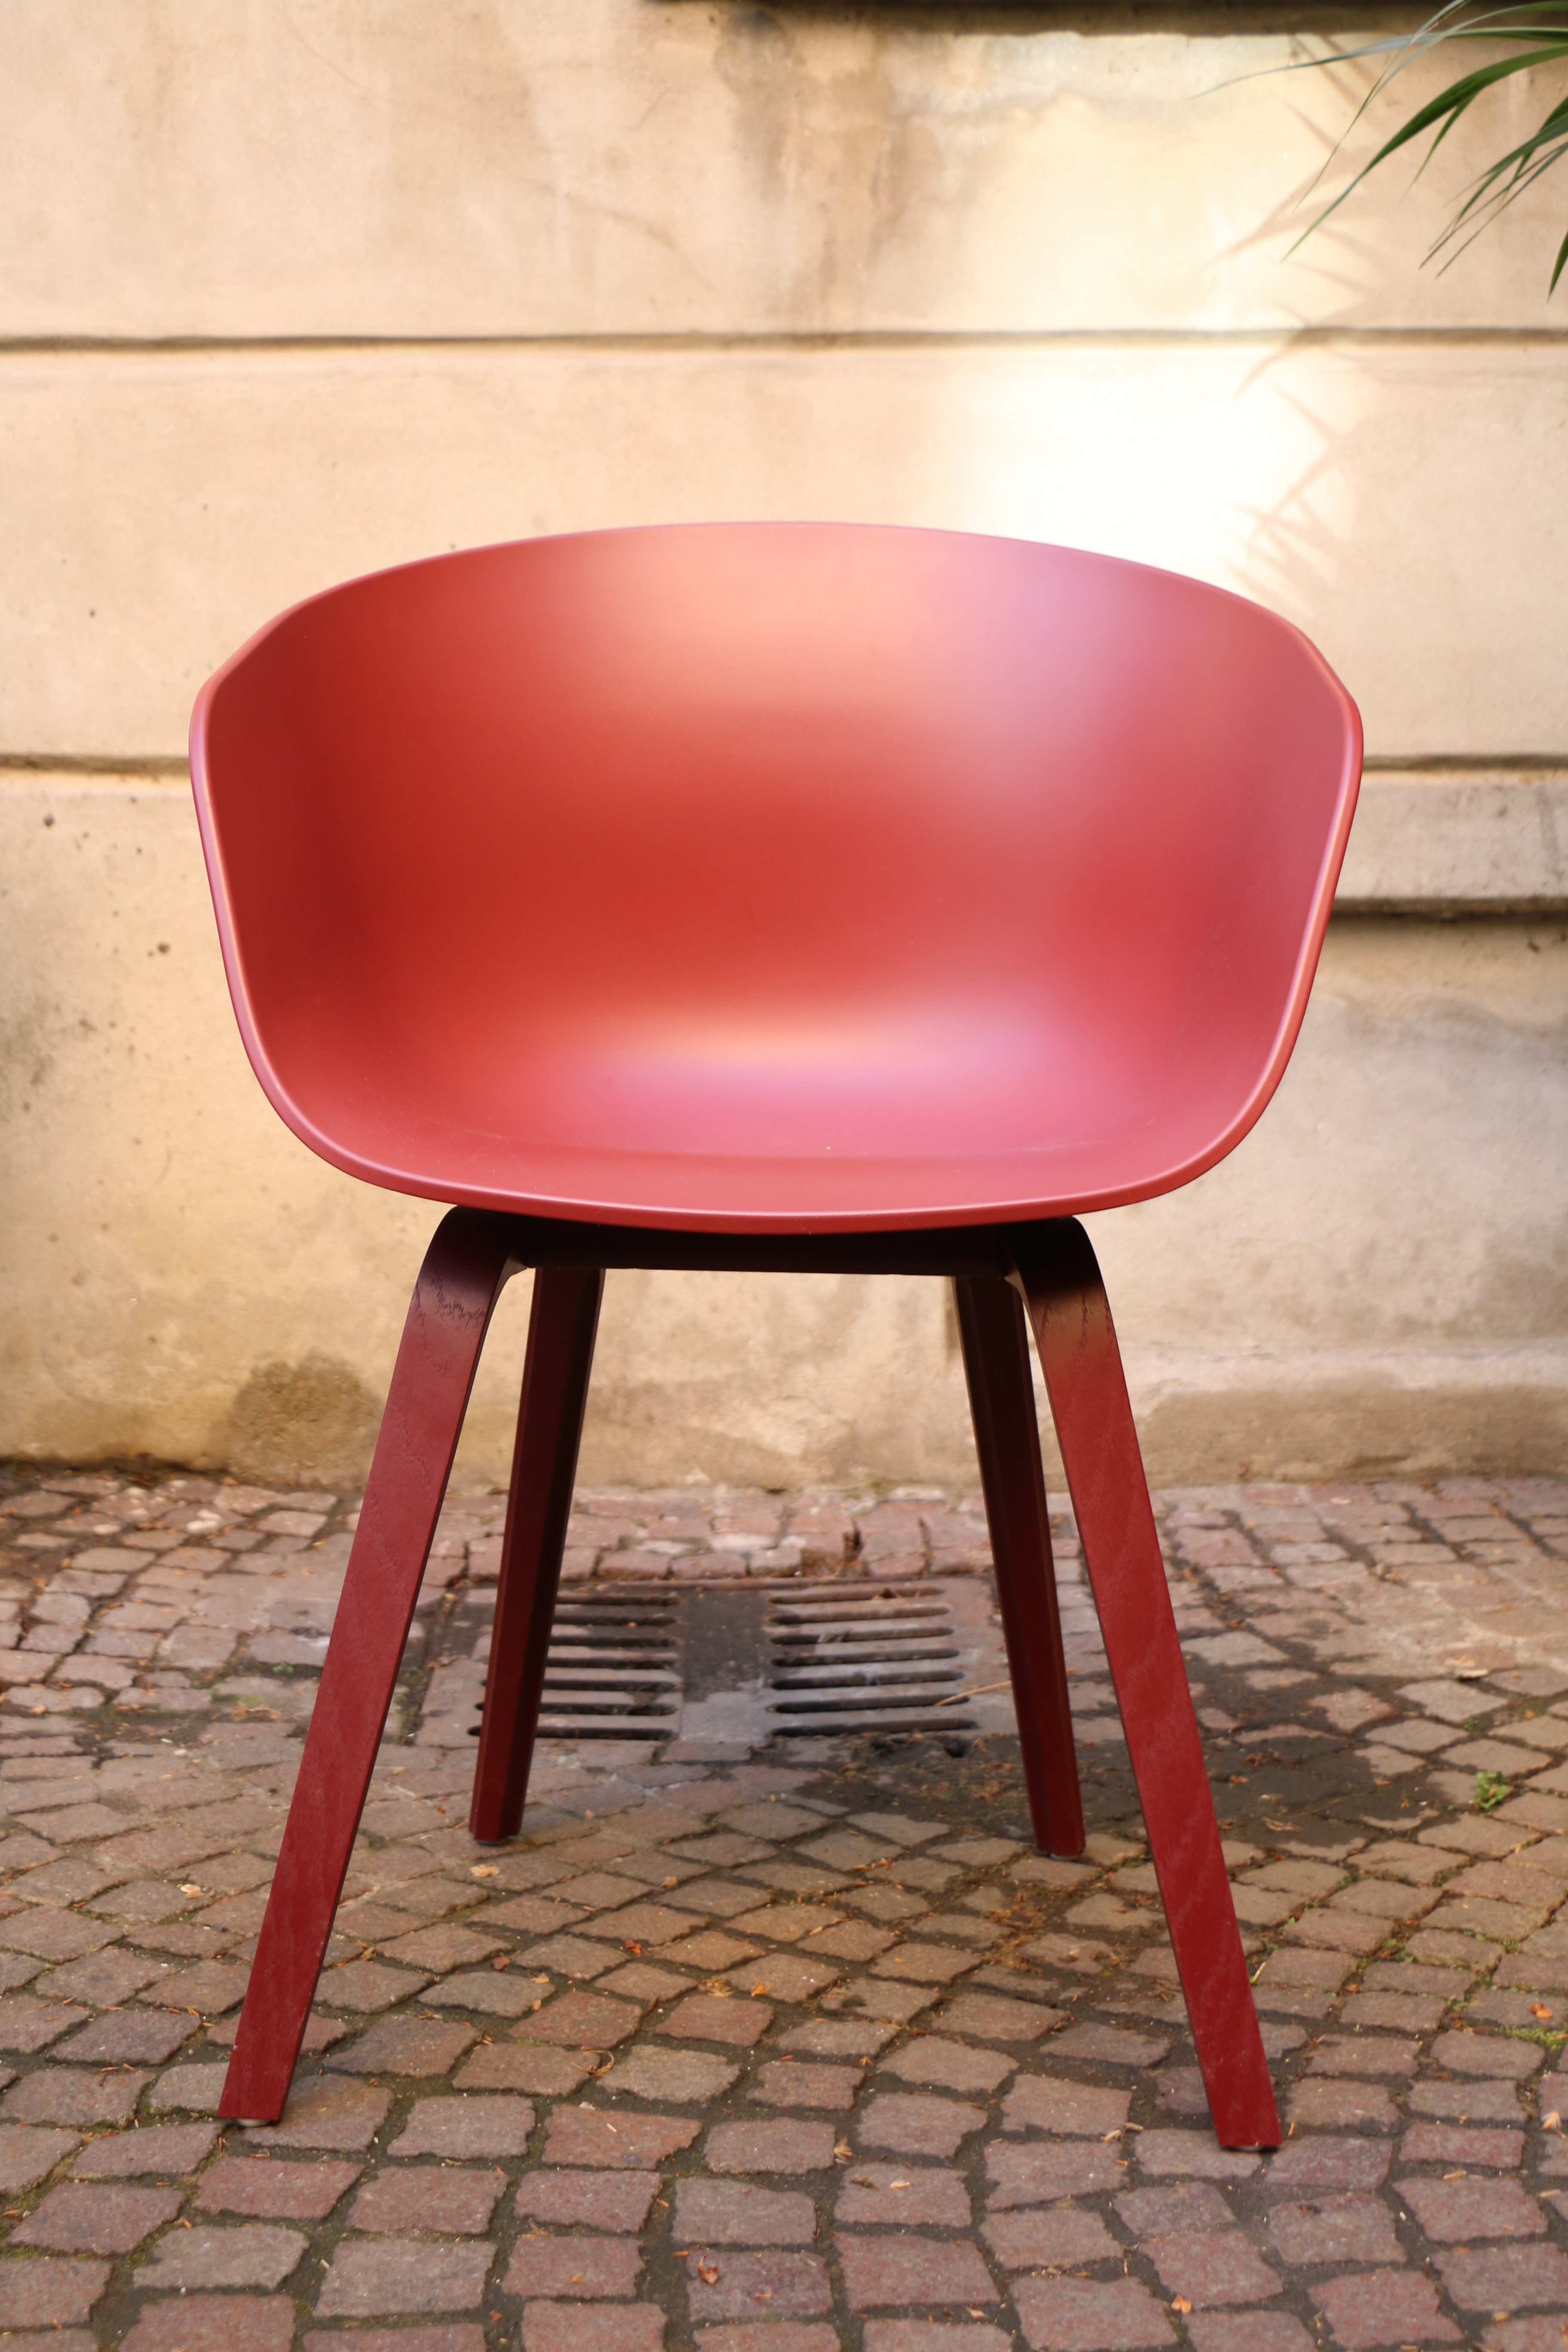 AAC 22 von HAY - About A Chair in neuen Farben by Design Bestseller